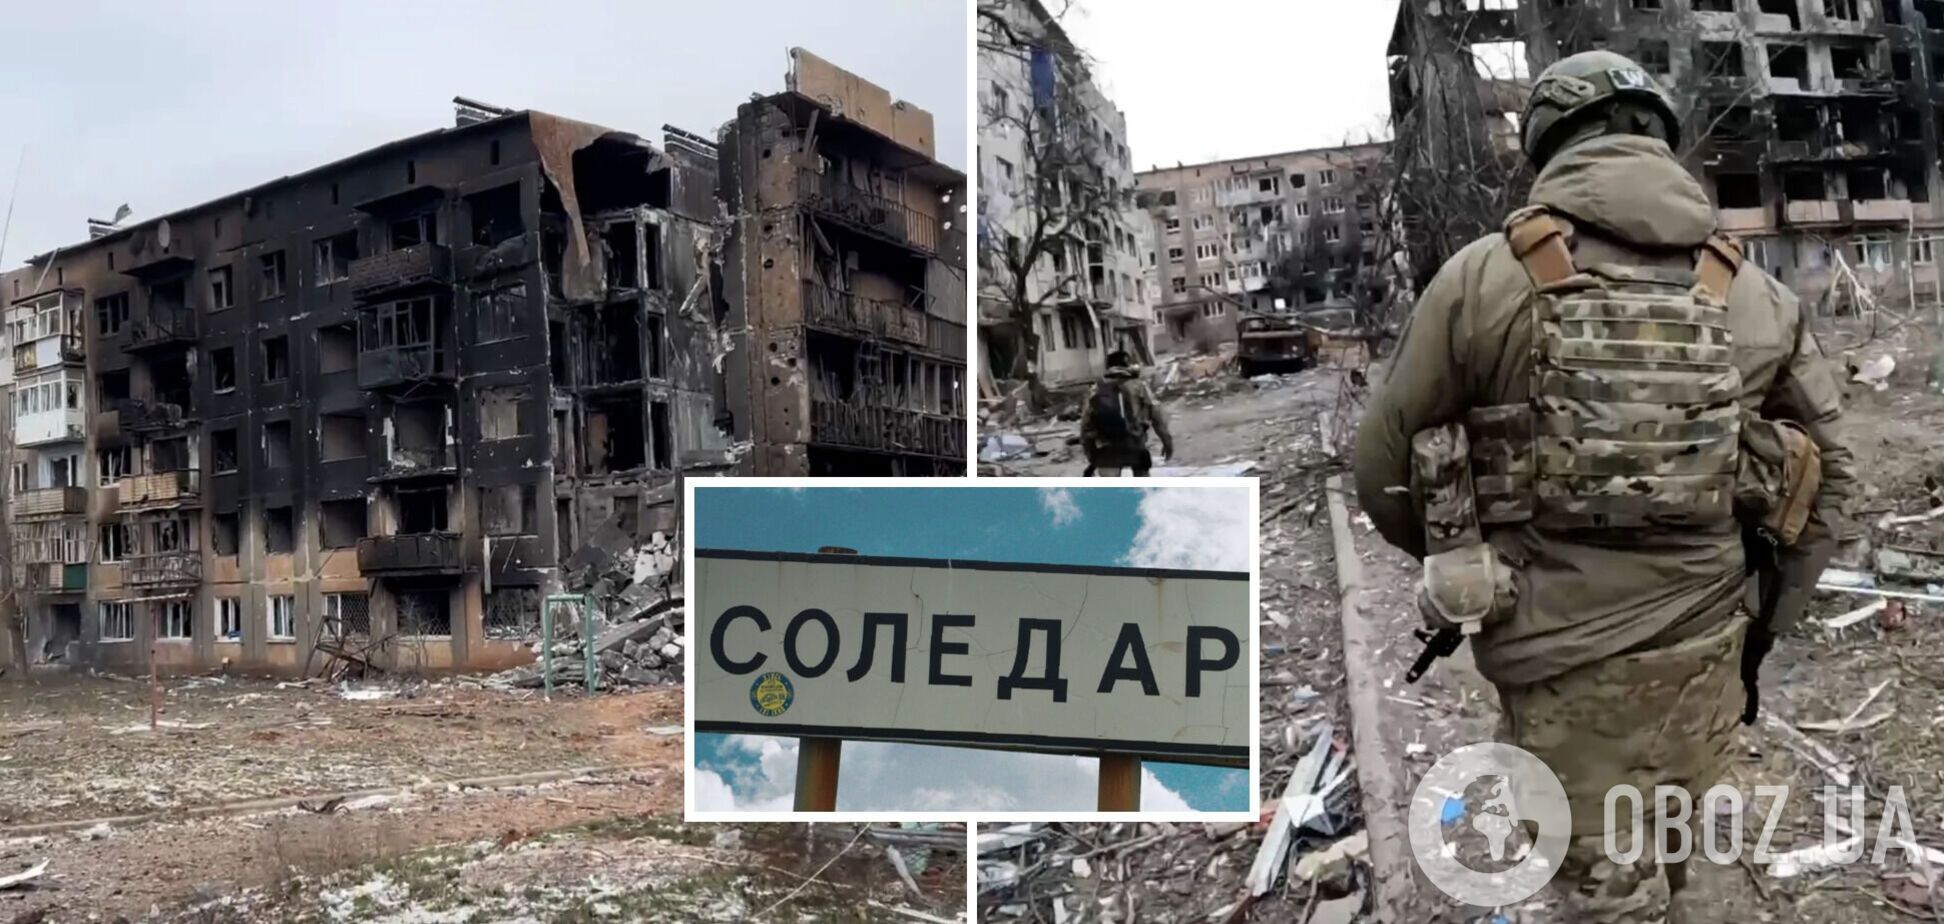 Украинские войска под угрозой окружения и с тяжелыми боями покинули жилые районы Соледара, – Бутусов